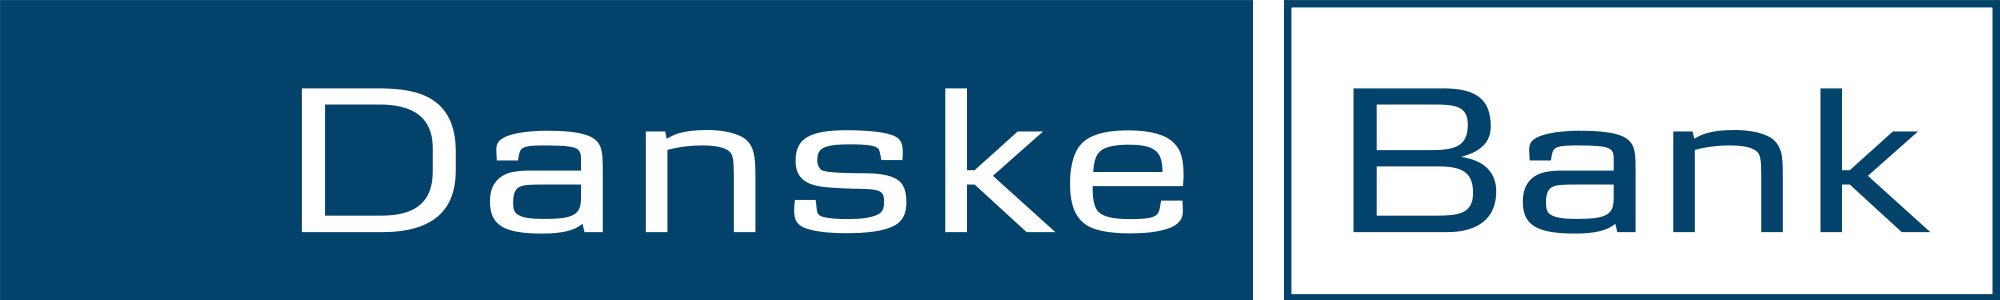 2000px-Danske_Bank_logo.svg.png